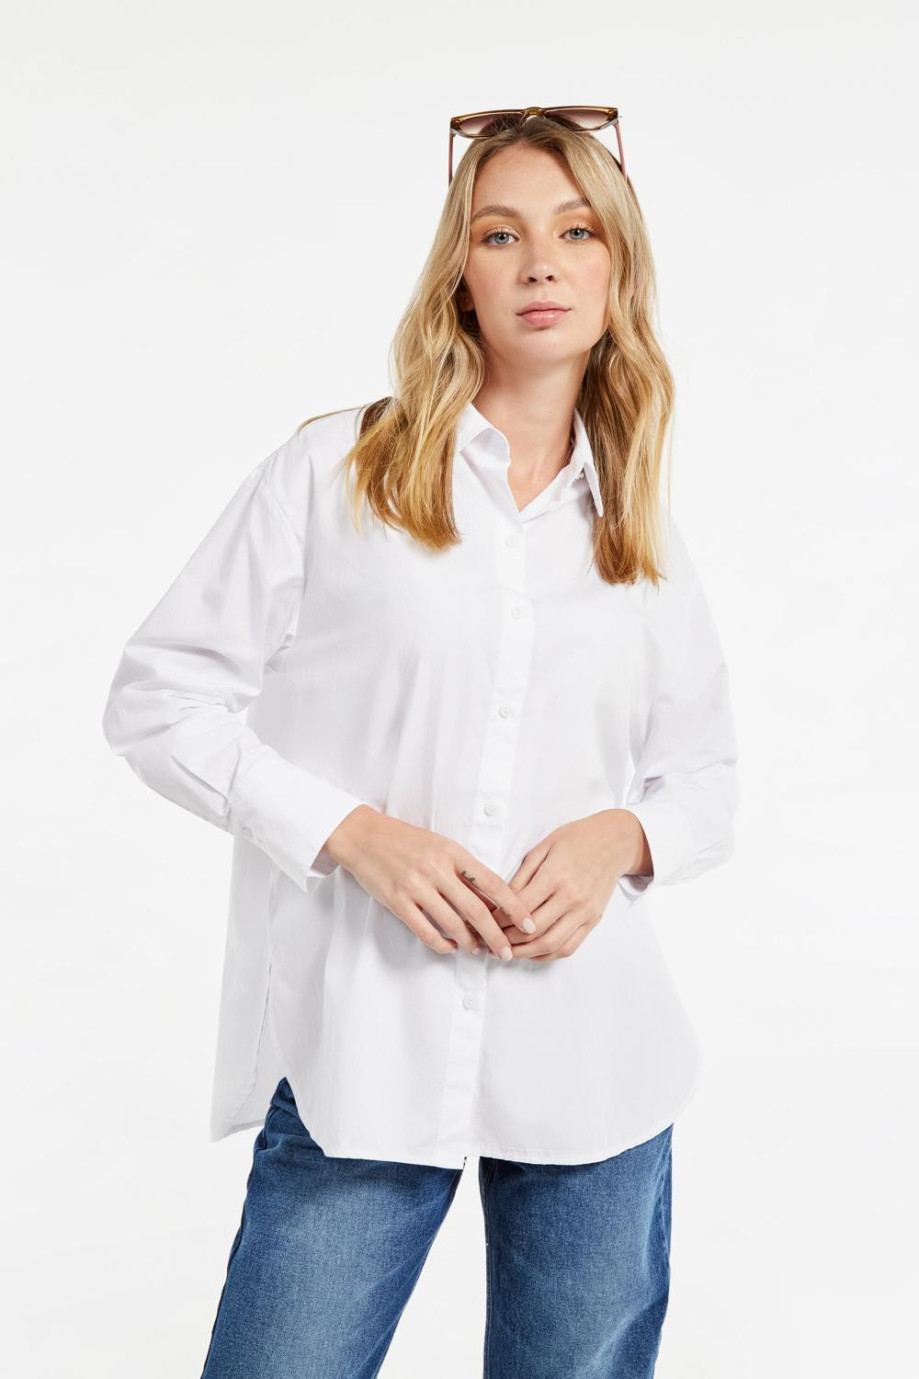 Blusa blanca con cuello camisero, botones y manga larga